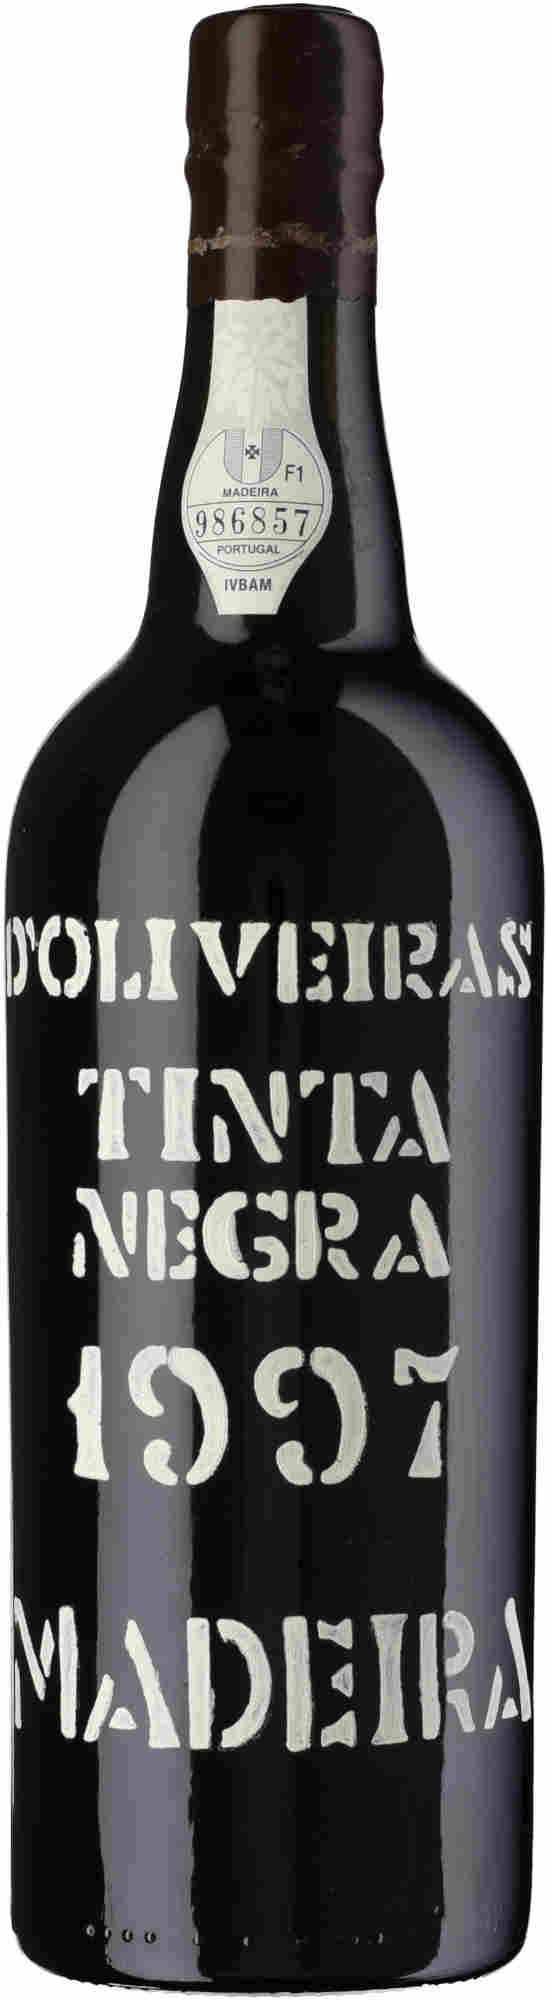 D-Oliveira-Tinta-Negra-1997